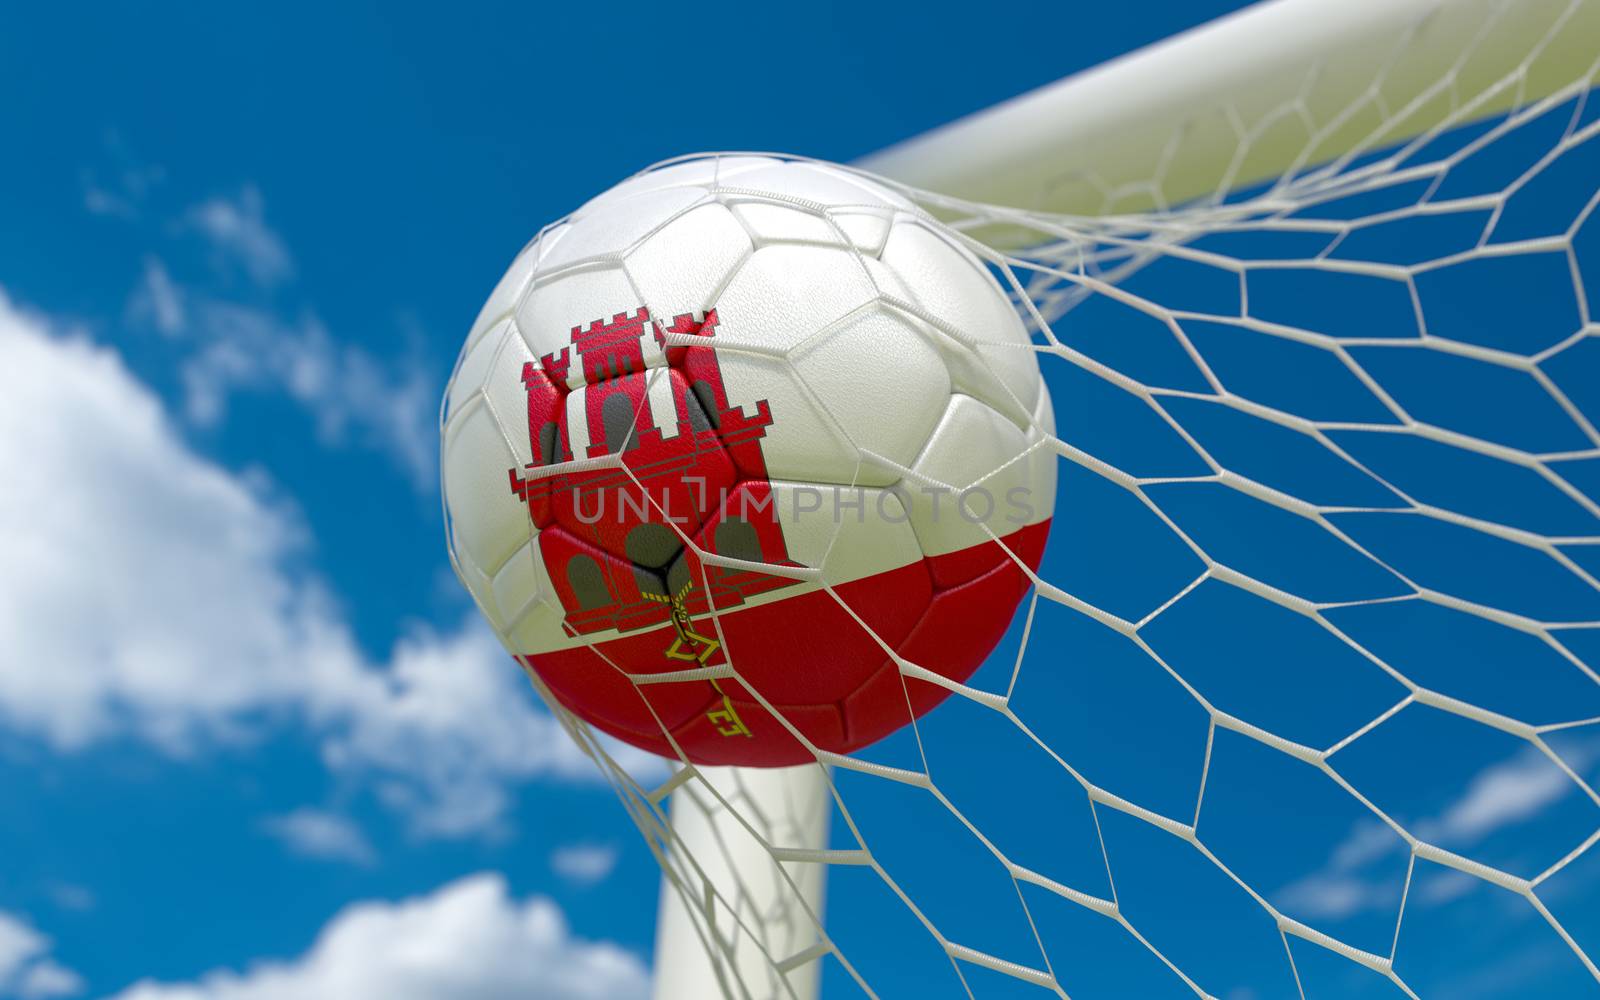 Gibraltar flag and soccer ball, football in goal net